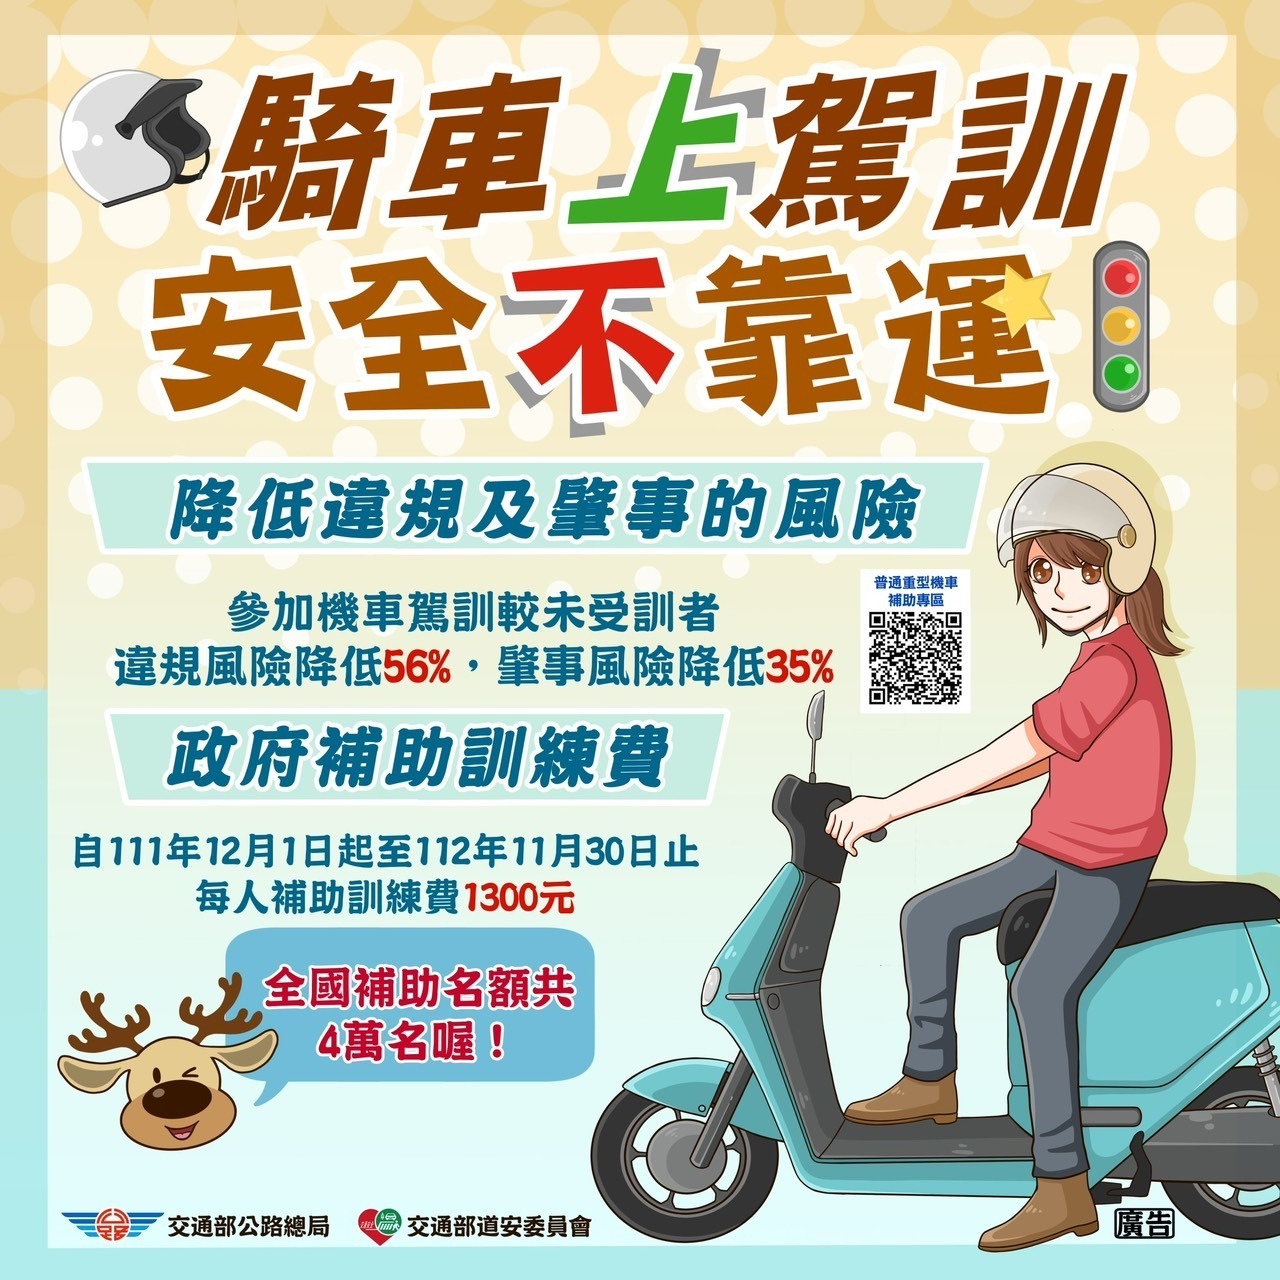 Từ năm 2019, Tổng cục Giao thông đường bộ của Đài Loan đã triển khai chương trình trợ cấp tham gia lớp đào tạo thi lấy bằng lái xe máy, với mức trợ cấp là 1.300 Đài tệ/người. (Nguồn ảnh: Tổng cục Giao thông đường bộ của Đài Loan)